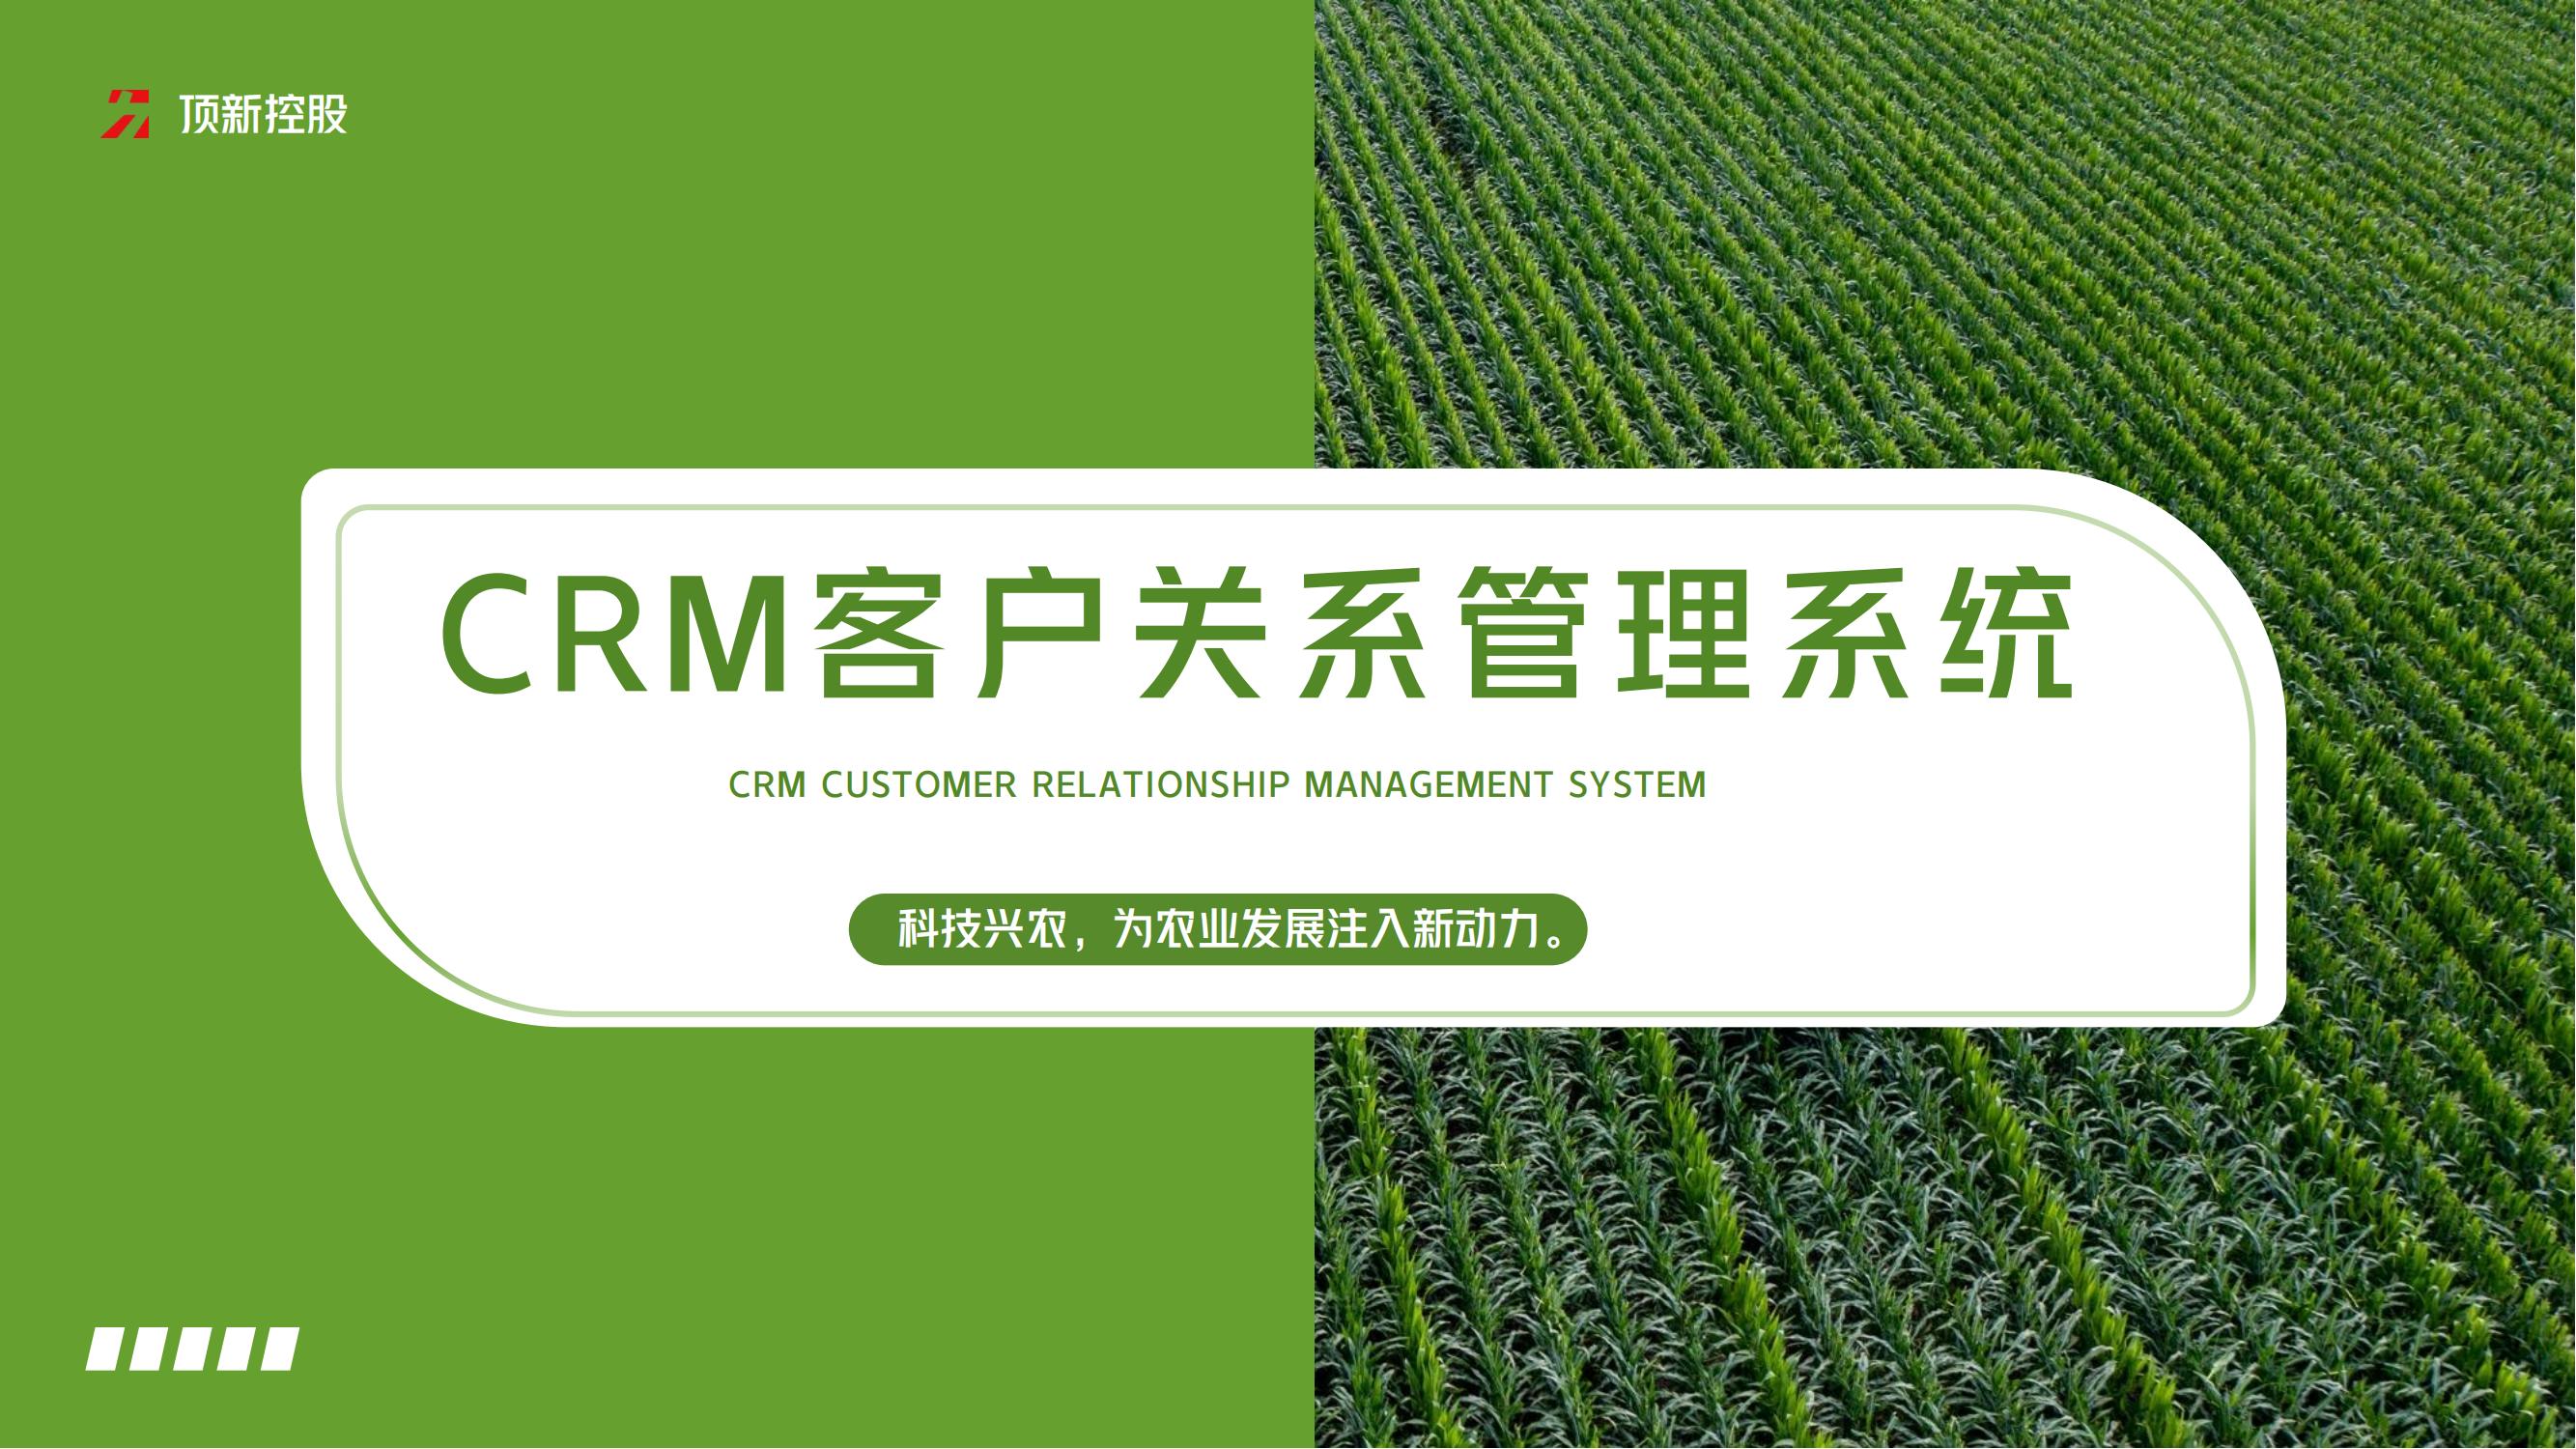 顶新智慧农业CRM客户关系管理系统